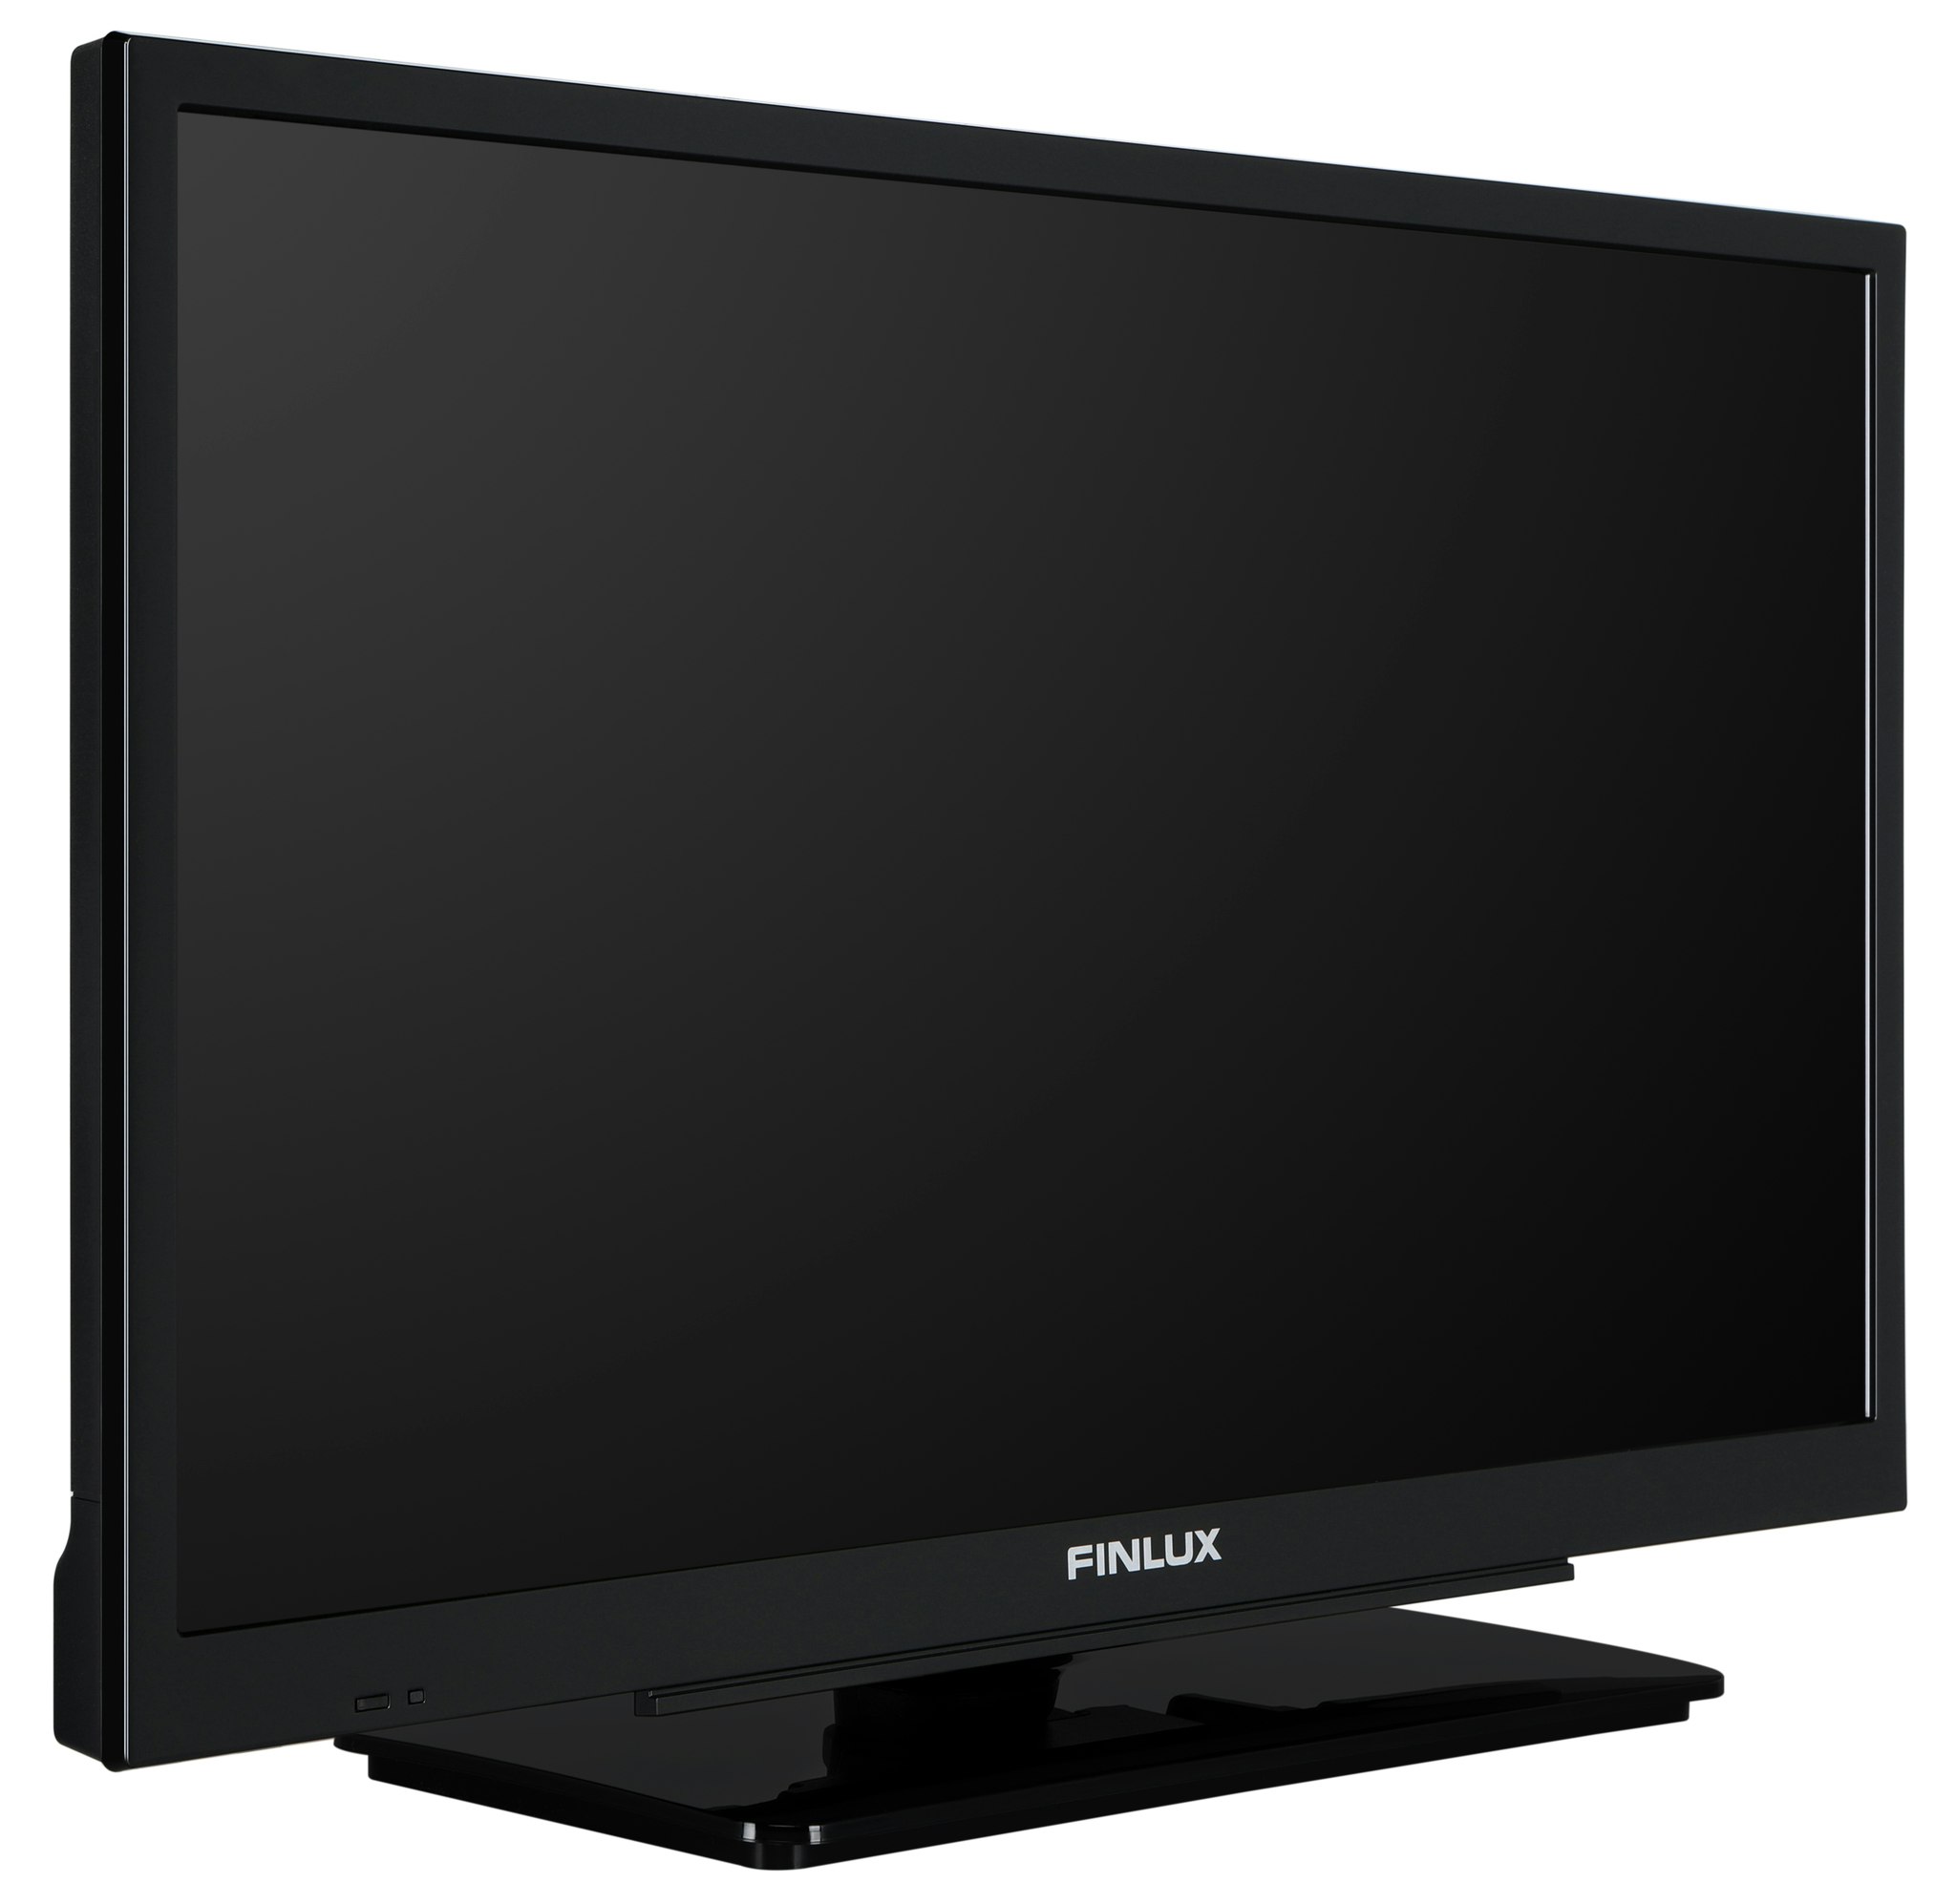 22" Finlux TV 22-FME-5160, 12V, Smart